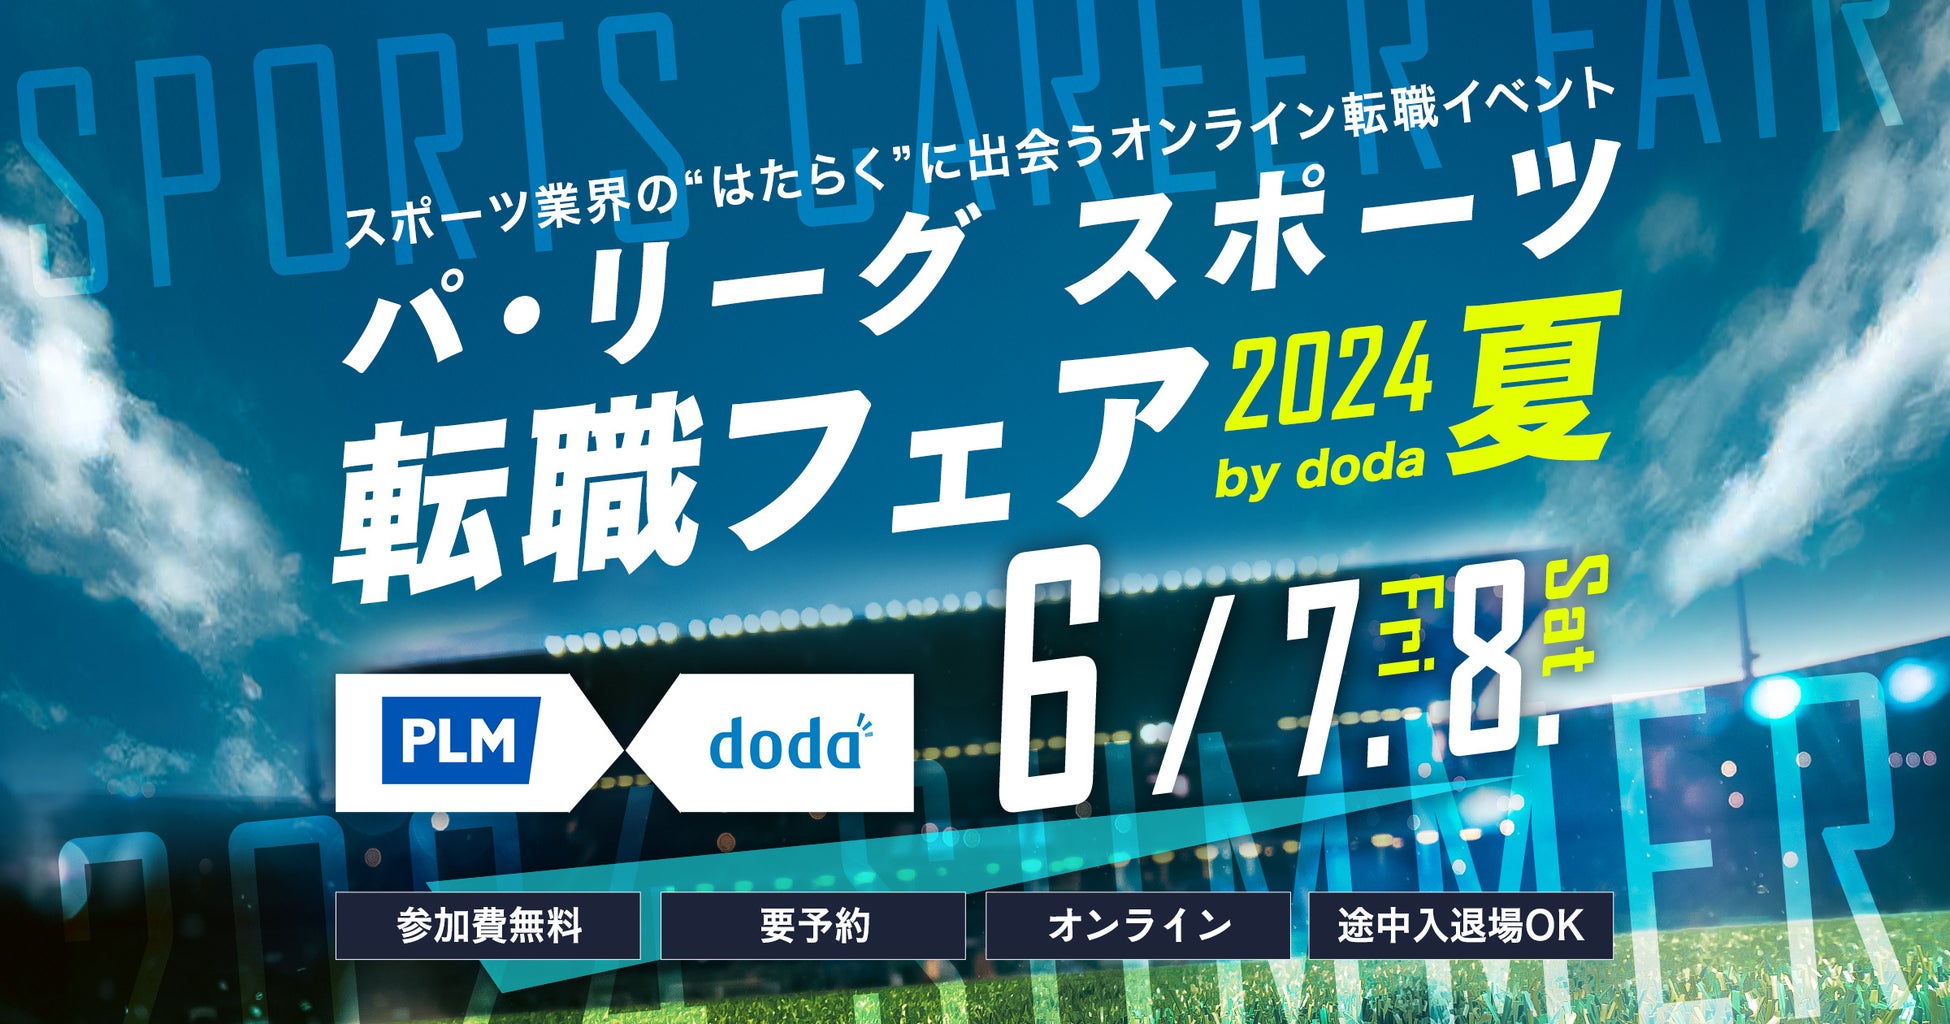 「パ・リーグ スポーツ転職フェア 2024 夏 by doda」開催のご案内